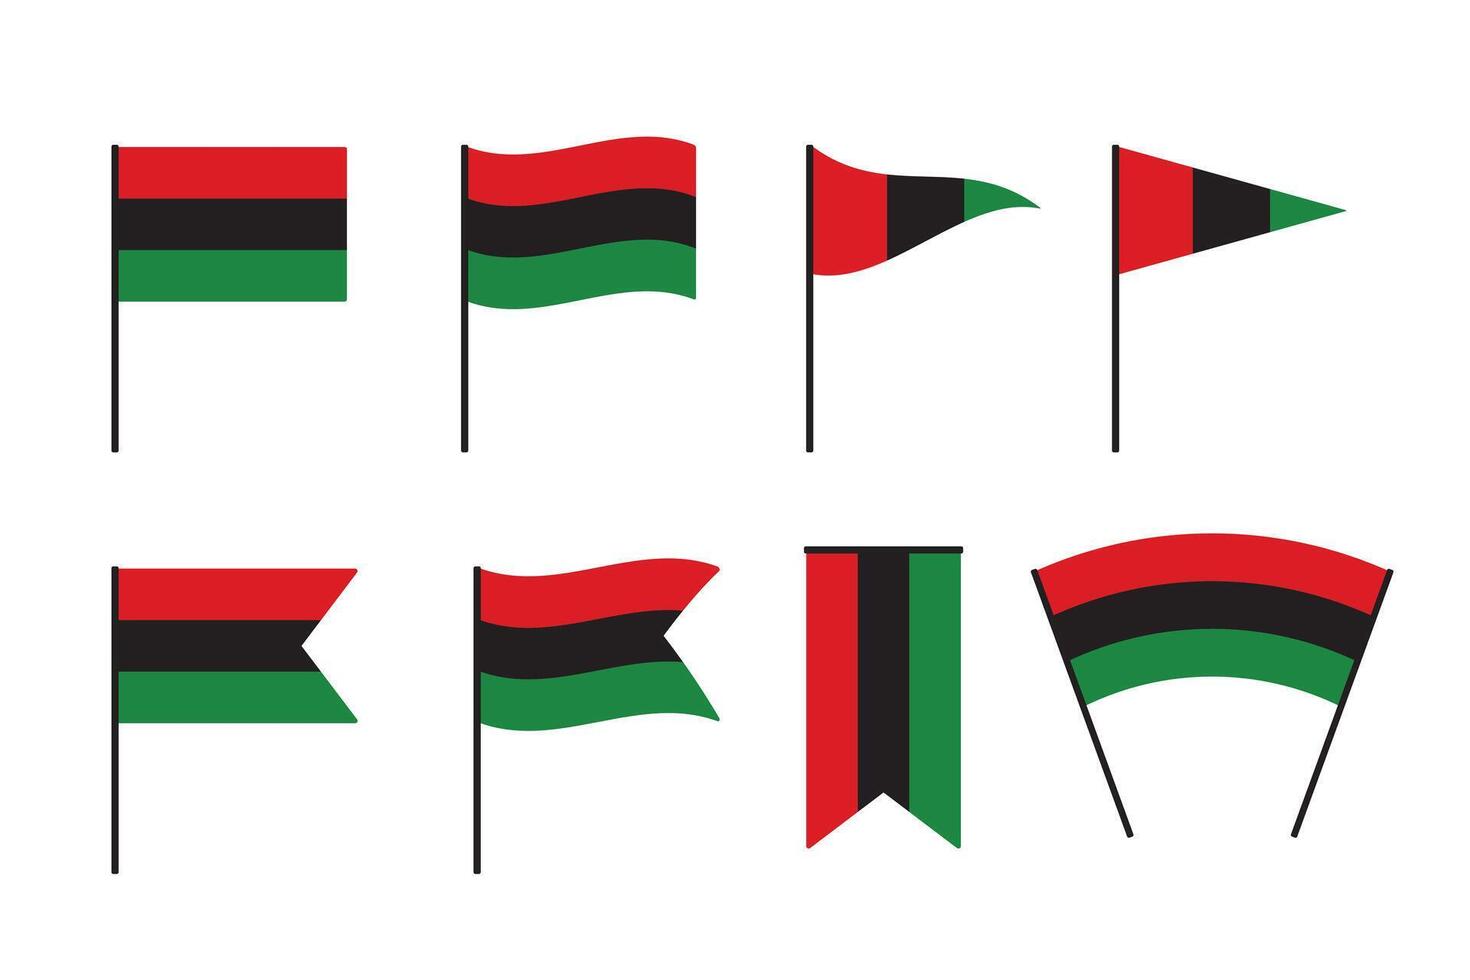 rouge, noir et vert coloré panafricain drapeau. pour juneteenth et noir histoire mois. plat vecteur illustration.